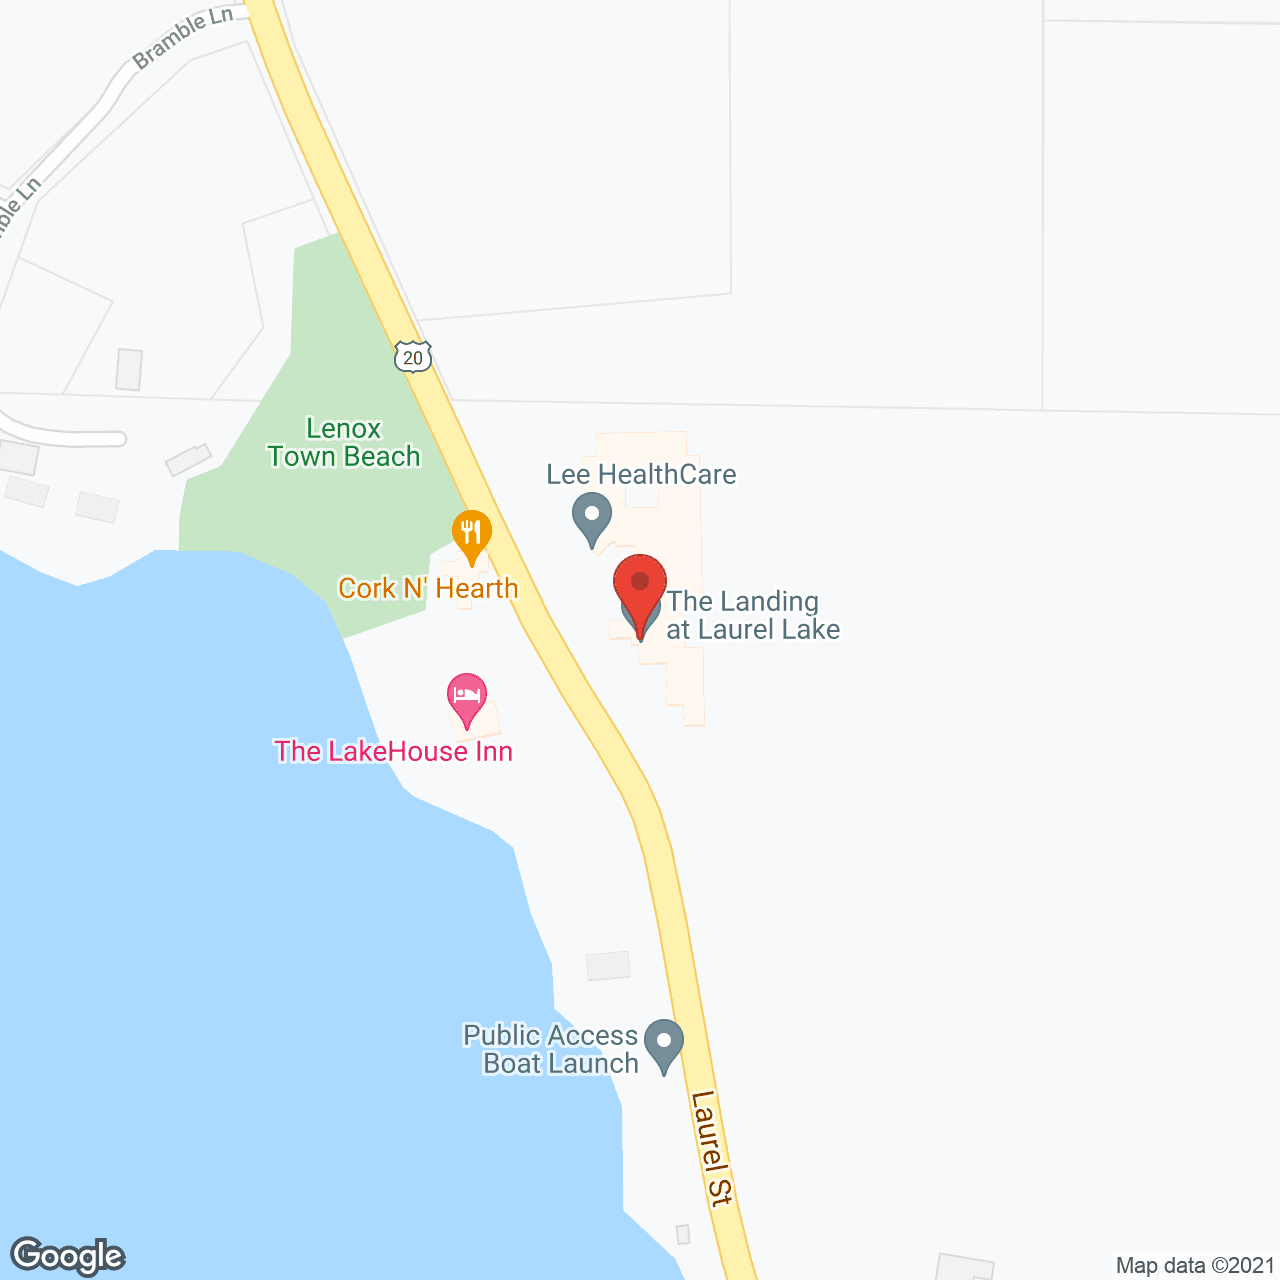 The Landing at Laurel Lake in google map